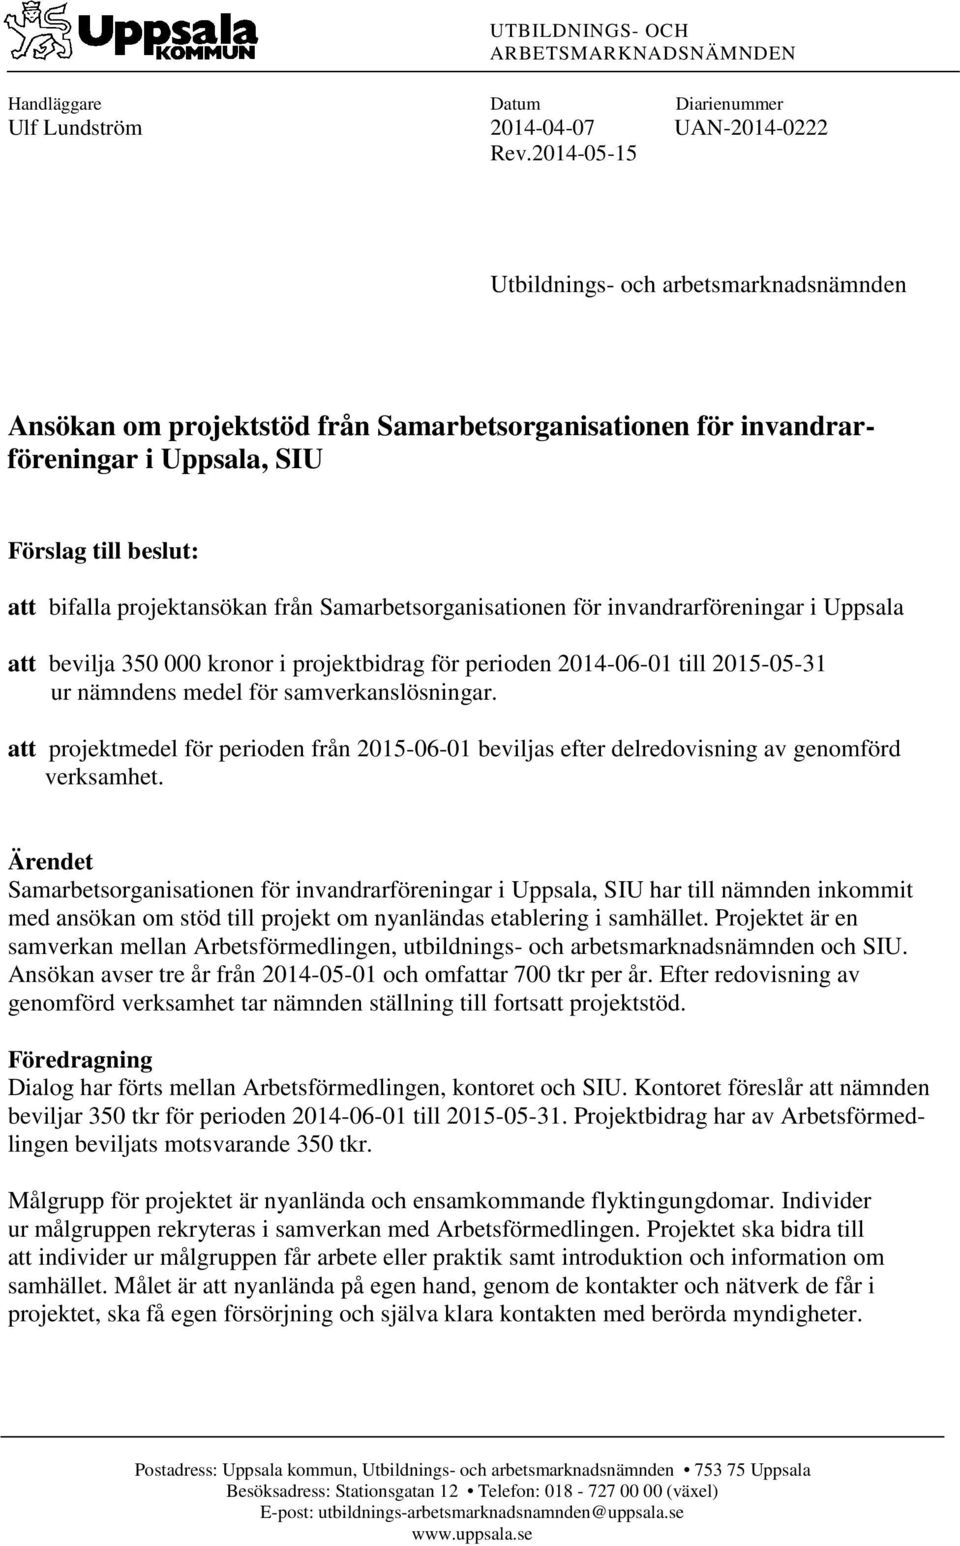 Samarbetsorganisationen för invandrarföreningar i Uppsala att bevilja 350 000 kronor i projektbidrag för perioden 2014-06-01 till 2015-05-31 ur nämndens medel för samverkanslösningar.